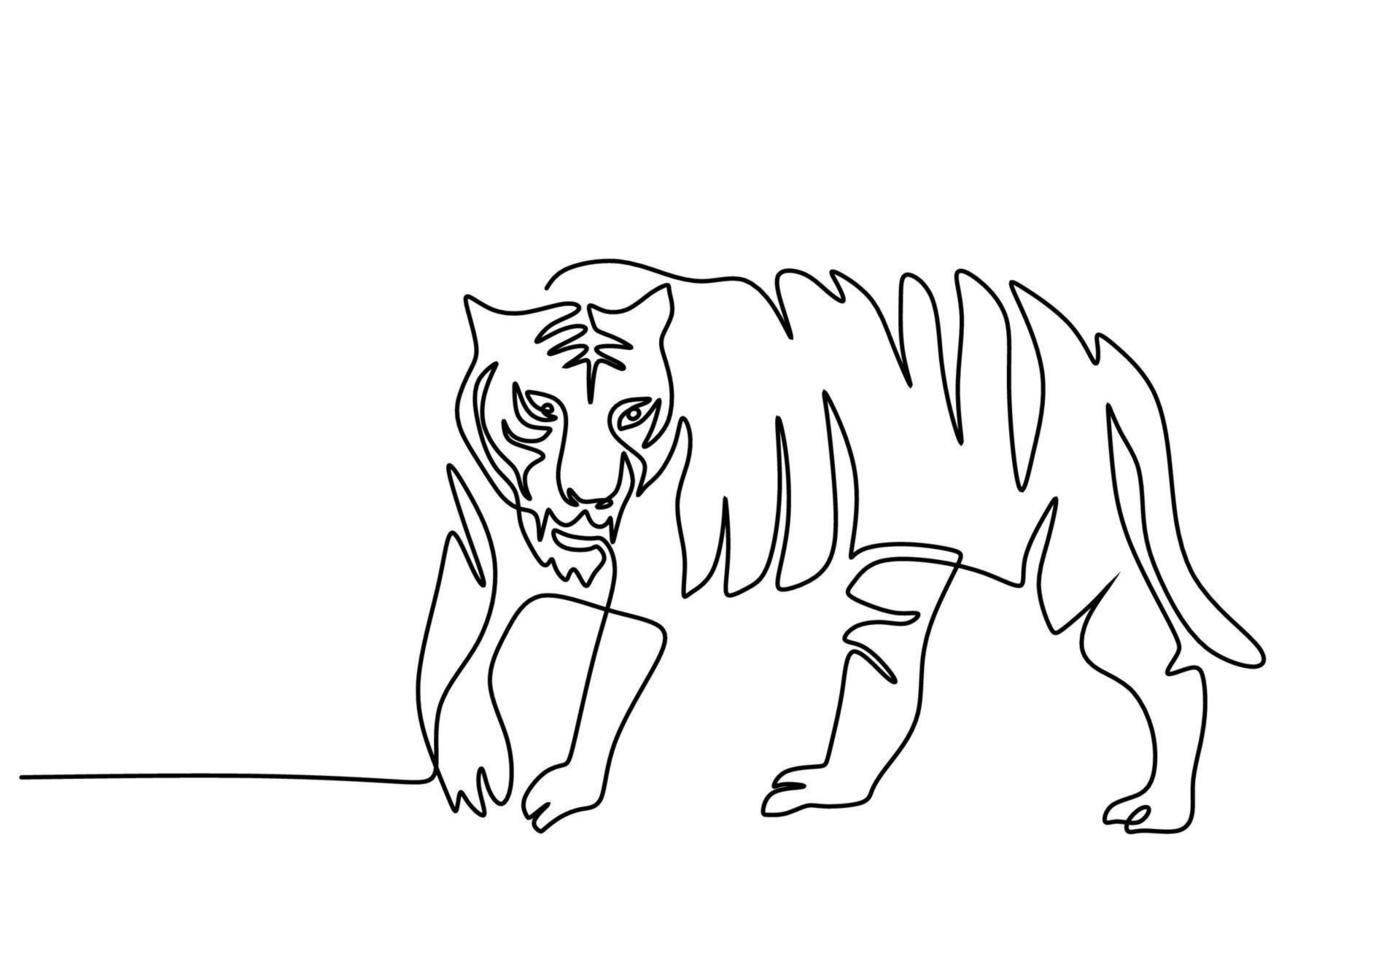 uno continuo singolo linea di internazionale tigre giorno con freddo tigre vettore